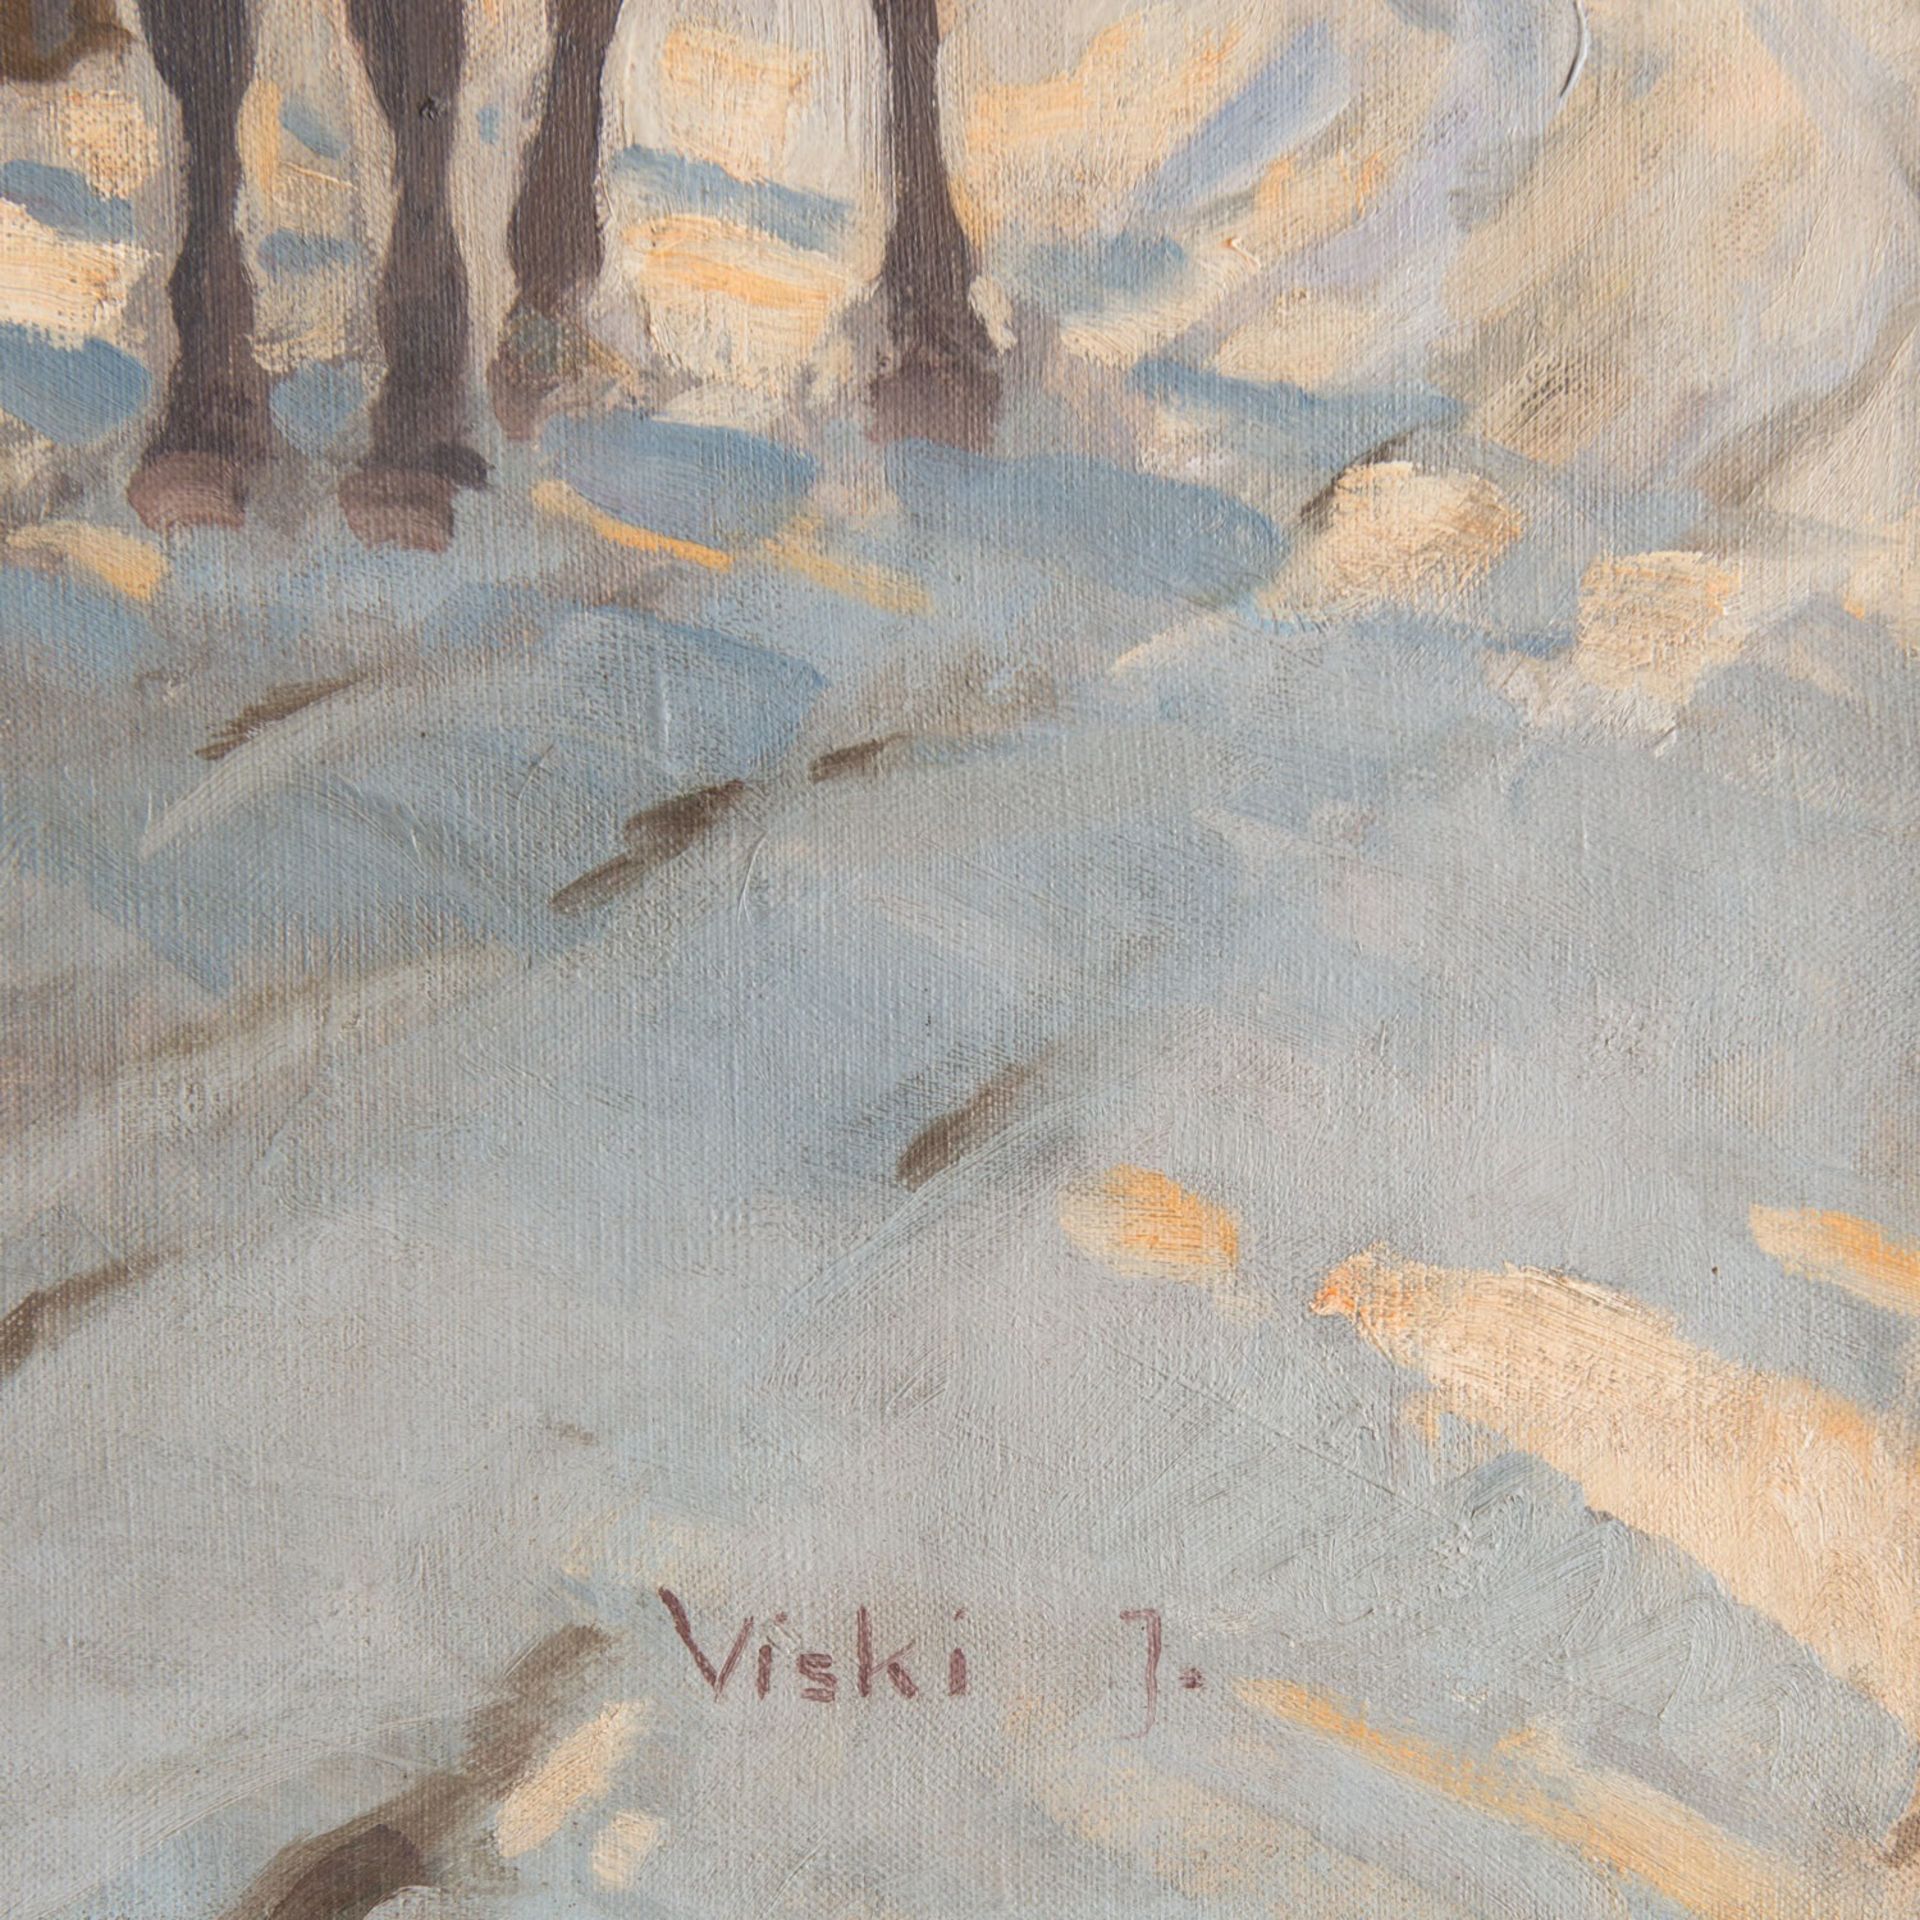 Janos Viski (1891-1987) - Image 3 of 3